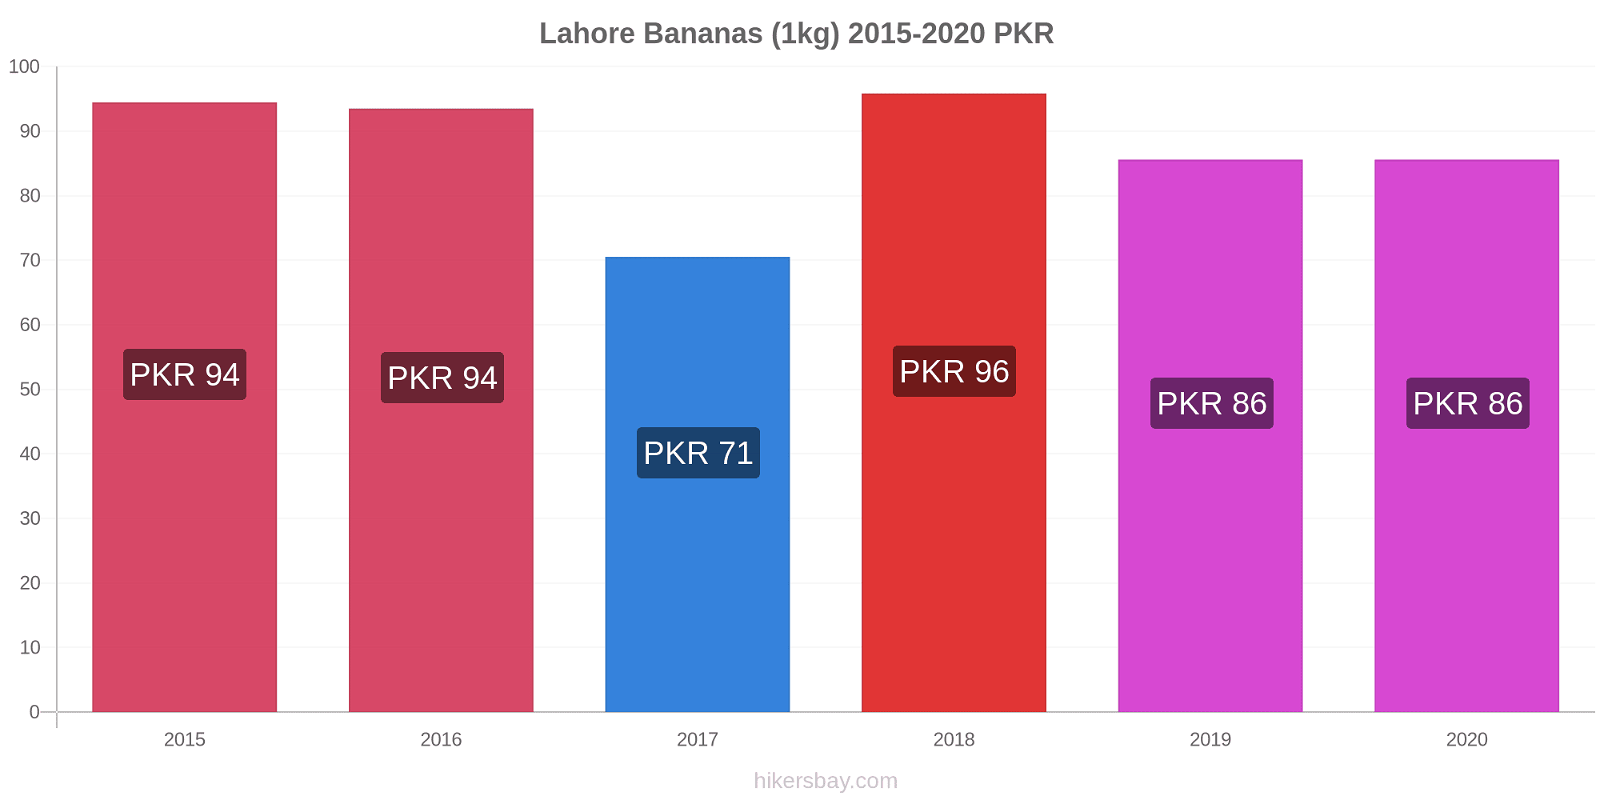 Lahore variação de preço Banana (1kg) hikersbay.com